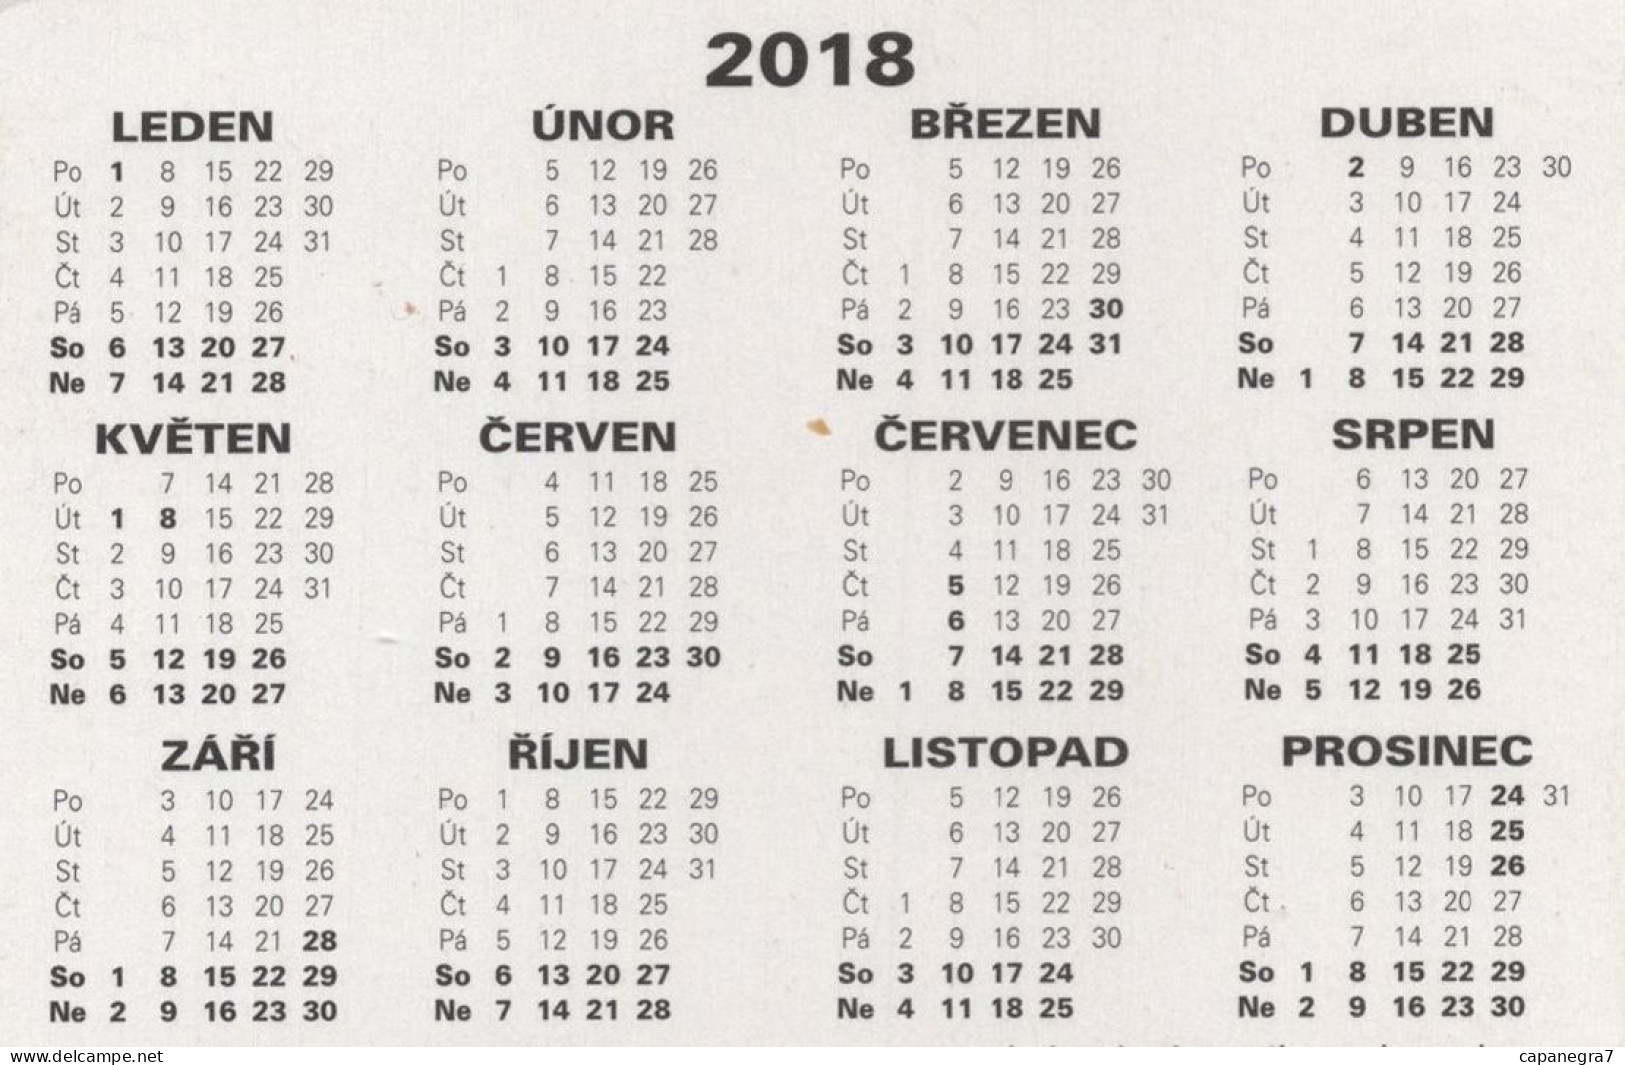 4 Calendars Locomotives, Czech Rep, 2018 - Kleinformat : 2001-...